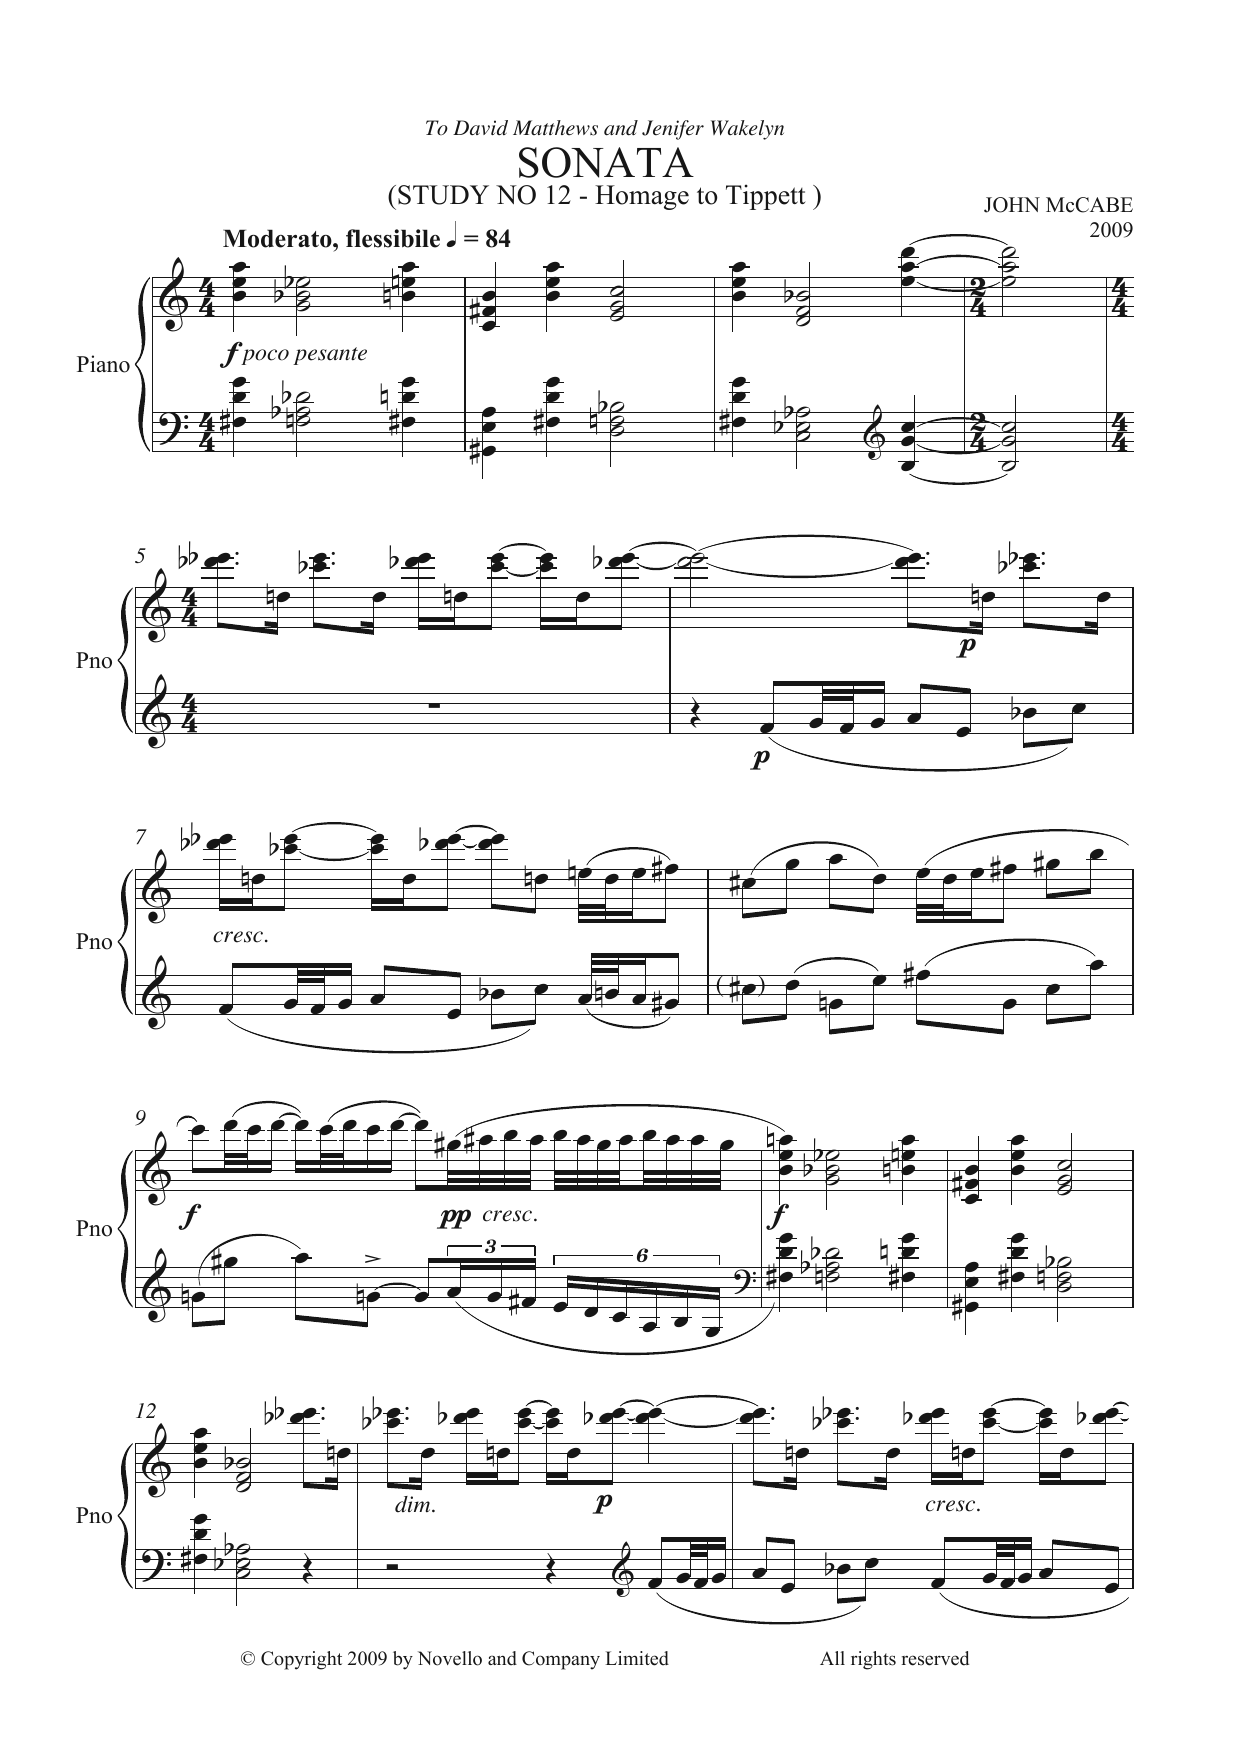 John McCabe Sonata (Study No. 12) Sheet Music Notes & Chords for Piano - Download or Print PDF